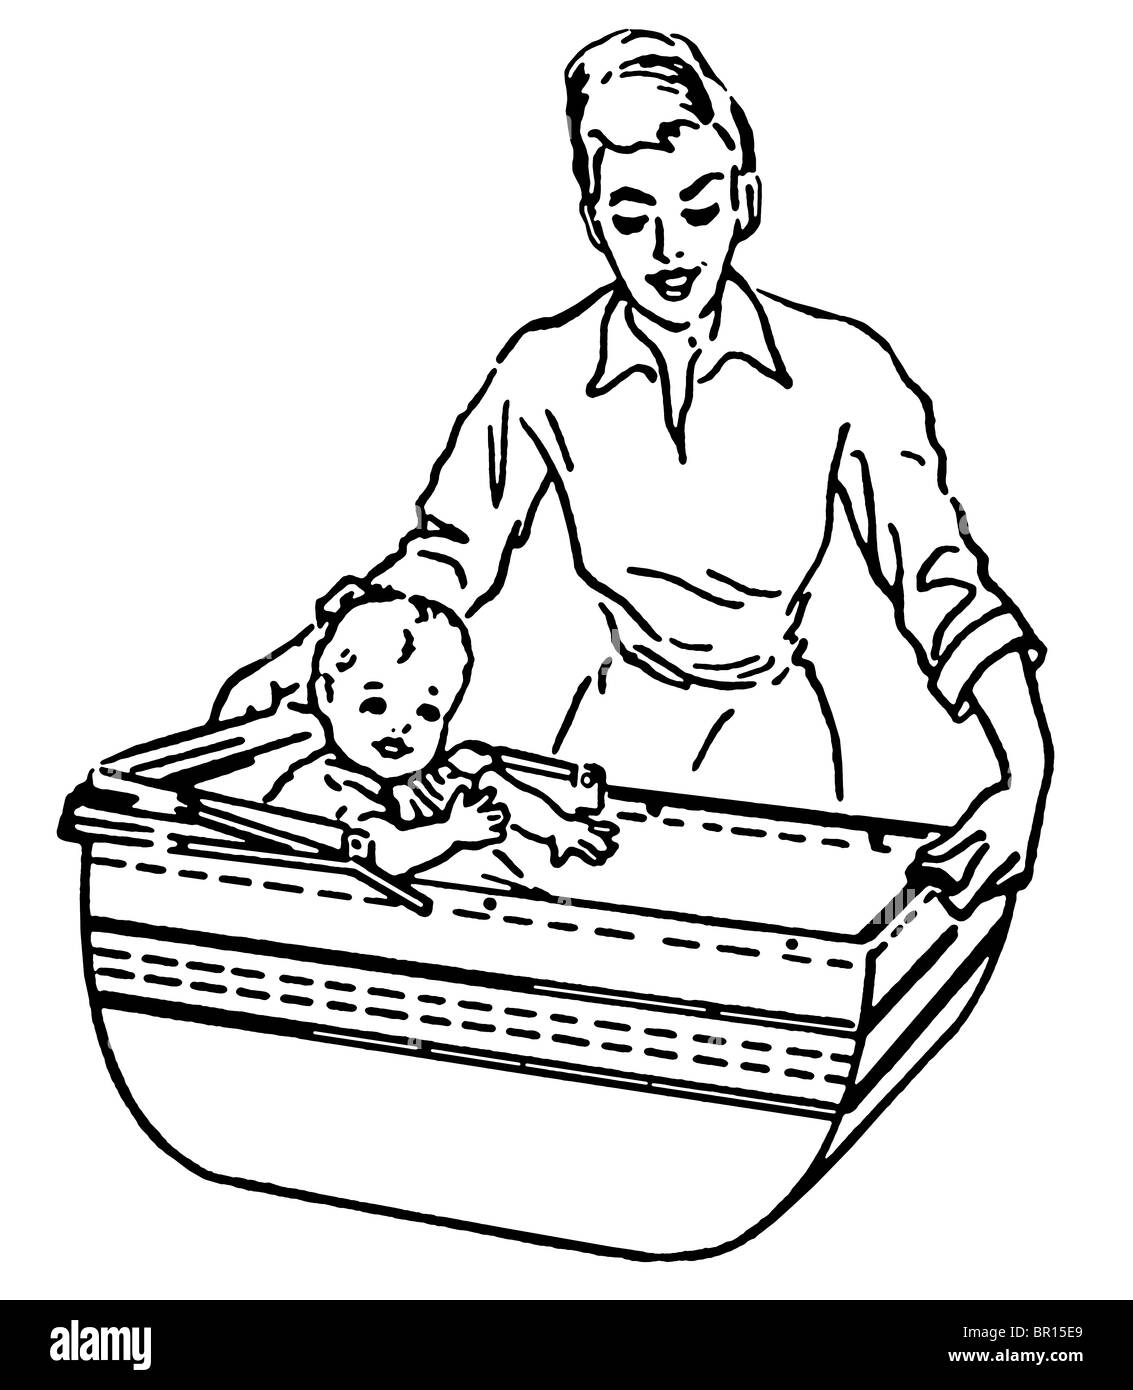 Une version noir et blanc d'une illustration d'un style vintage femme et bébé Banque D'Images